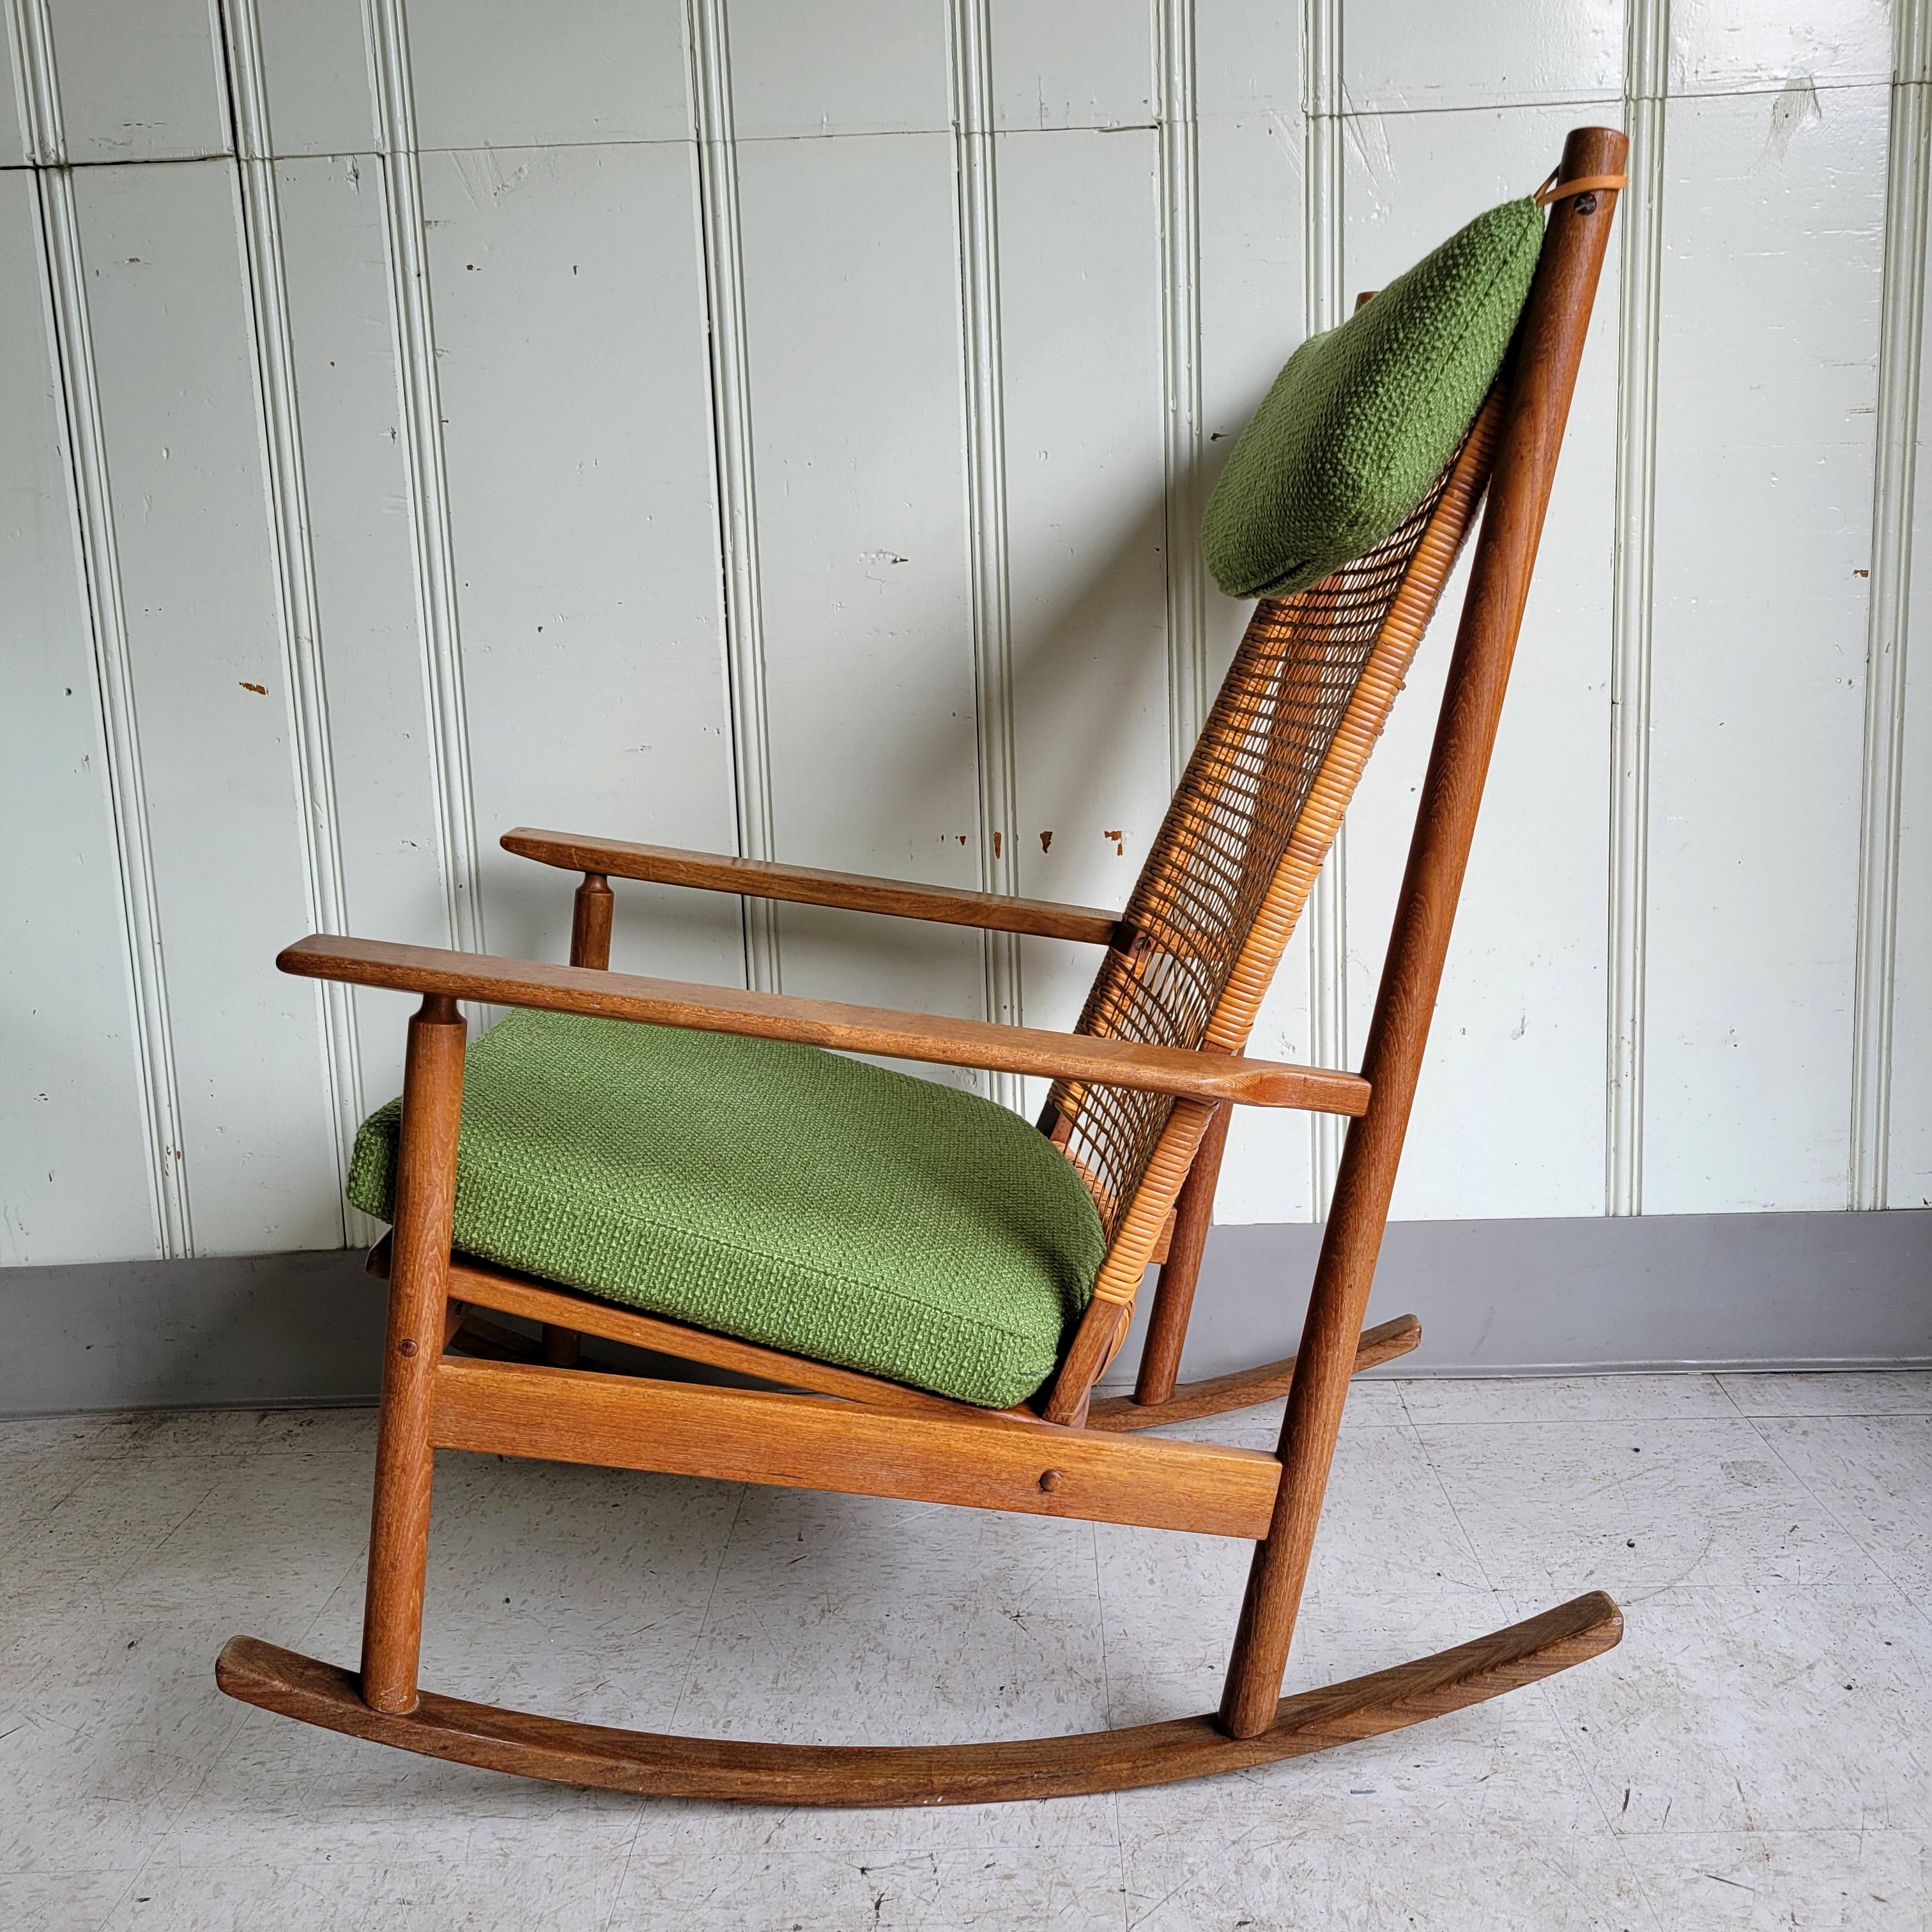 Ein original Hans Olsen für DUX Schaukelstuhl aus Teak- und Afromosiaholz. Ein schön proportionierter und gestalteter Stuhl. Alle Elemente sind gut aufeinander abgestimmt. Die Wärme des Holzes, das geflochtene Rohr, die Wollpolsterung und der